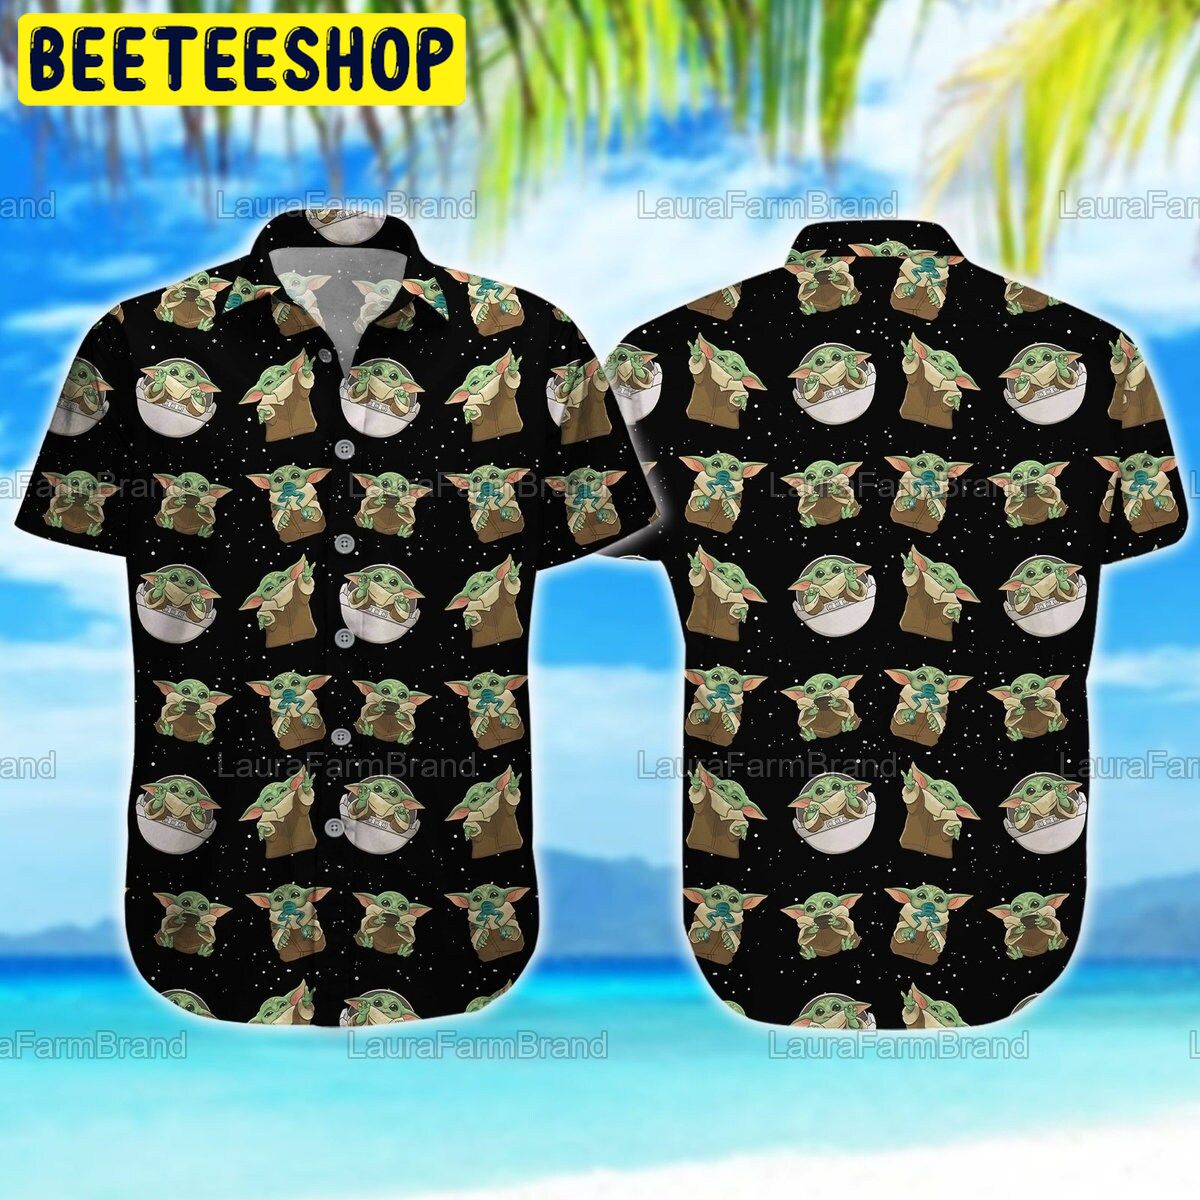 Colorado Rockies Baby Yoda Lover Tropical Style Hawaiian Shirt And Shorts -  Banantees